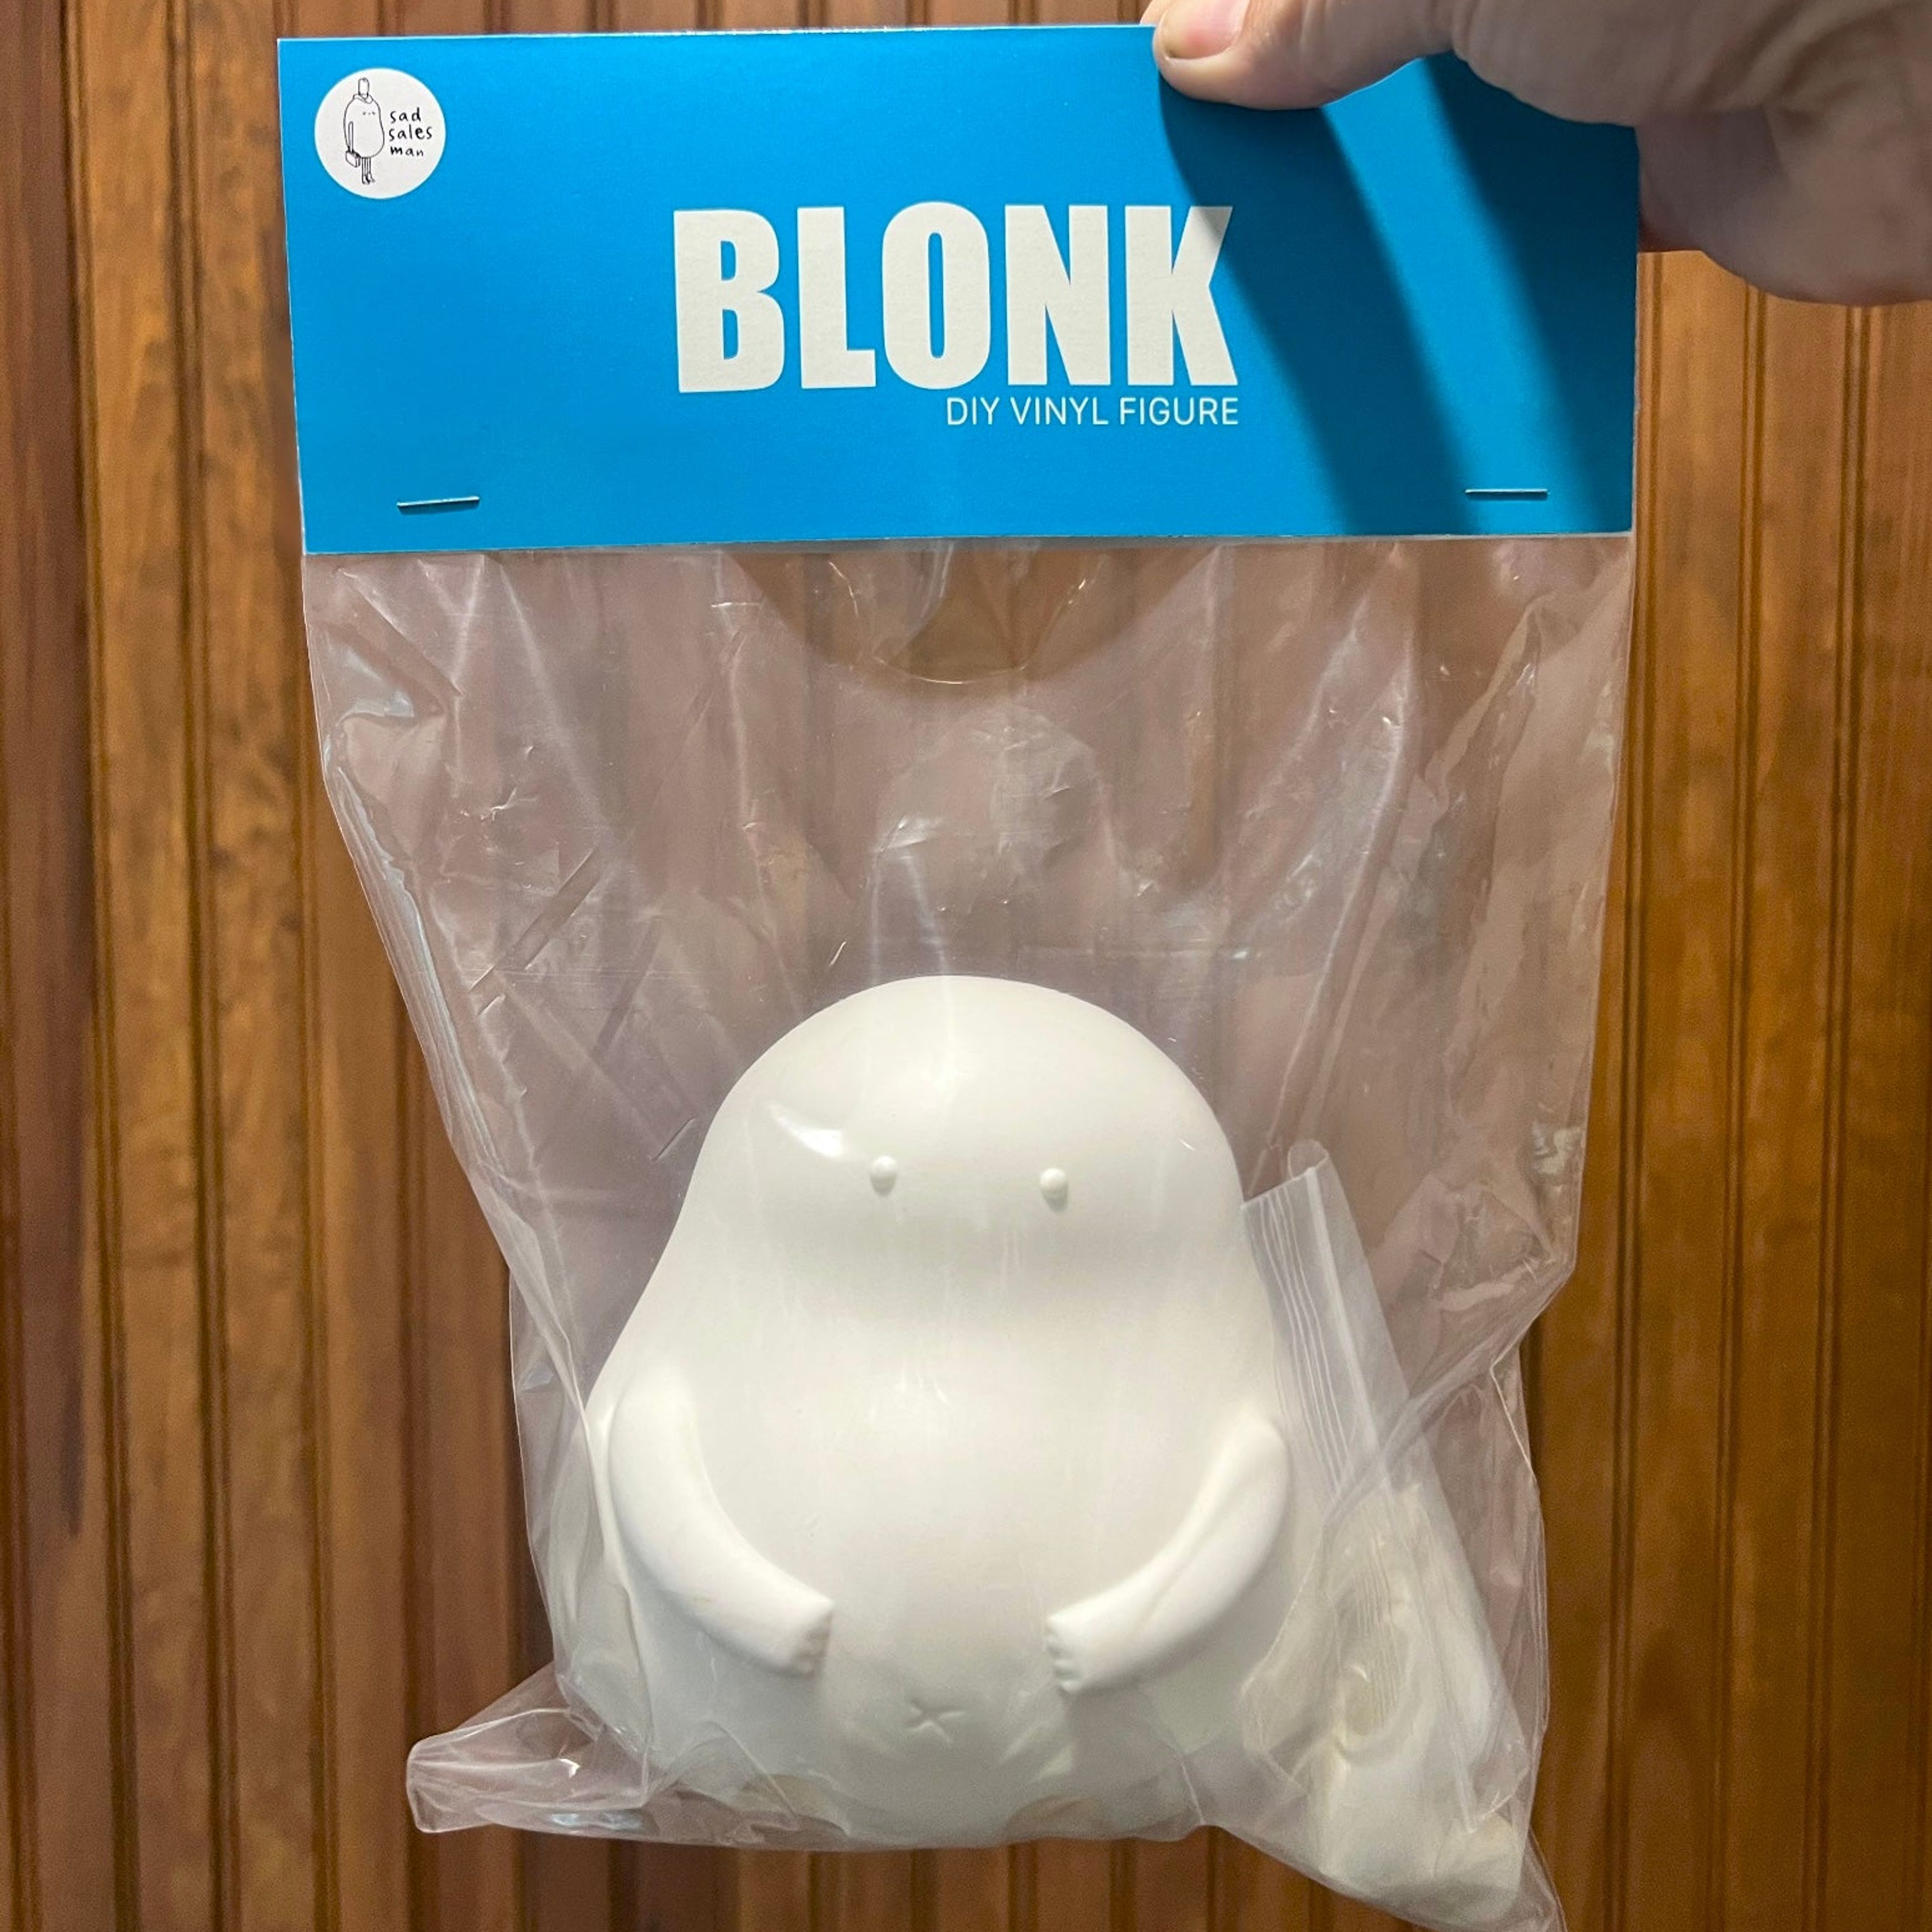 Blonk - Diy Vinyl Figure